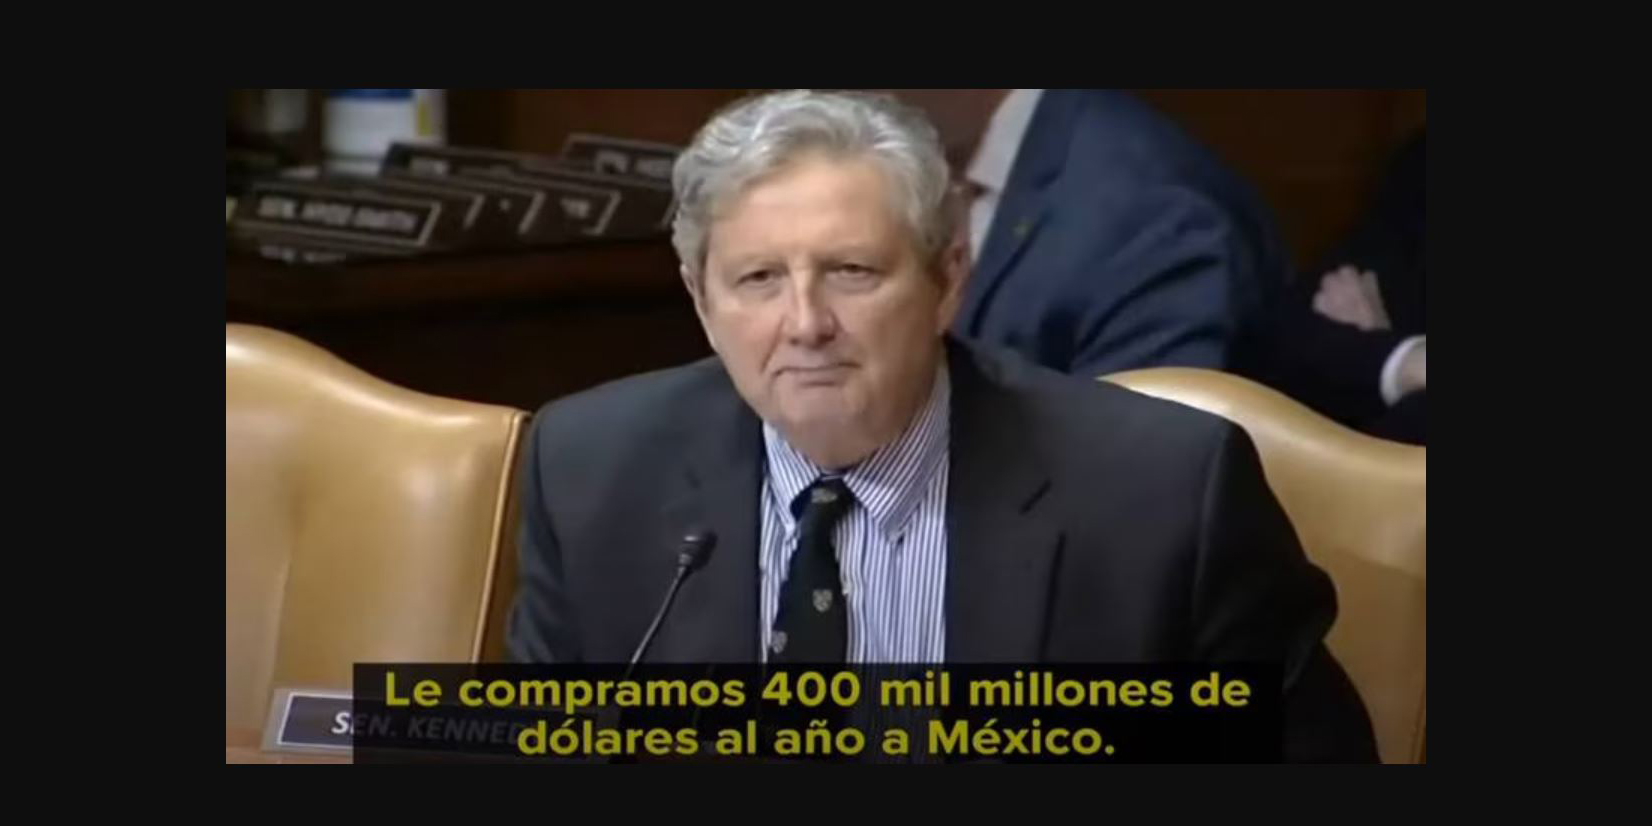 El republicano John Kennedy es declarado como Persona Non Grata en México | El Imparcial de Oaxaca